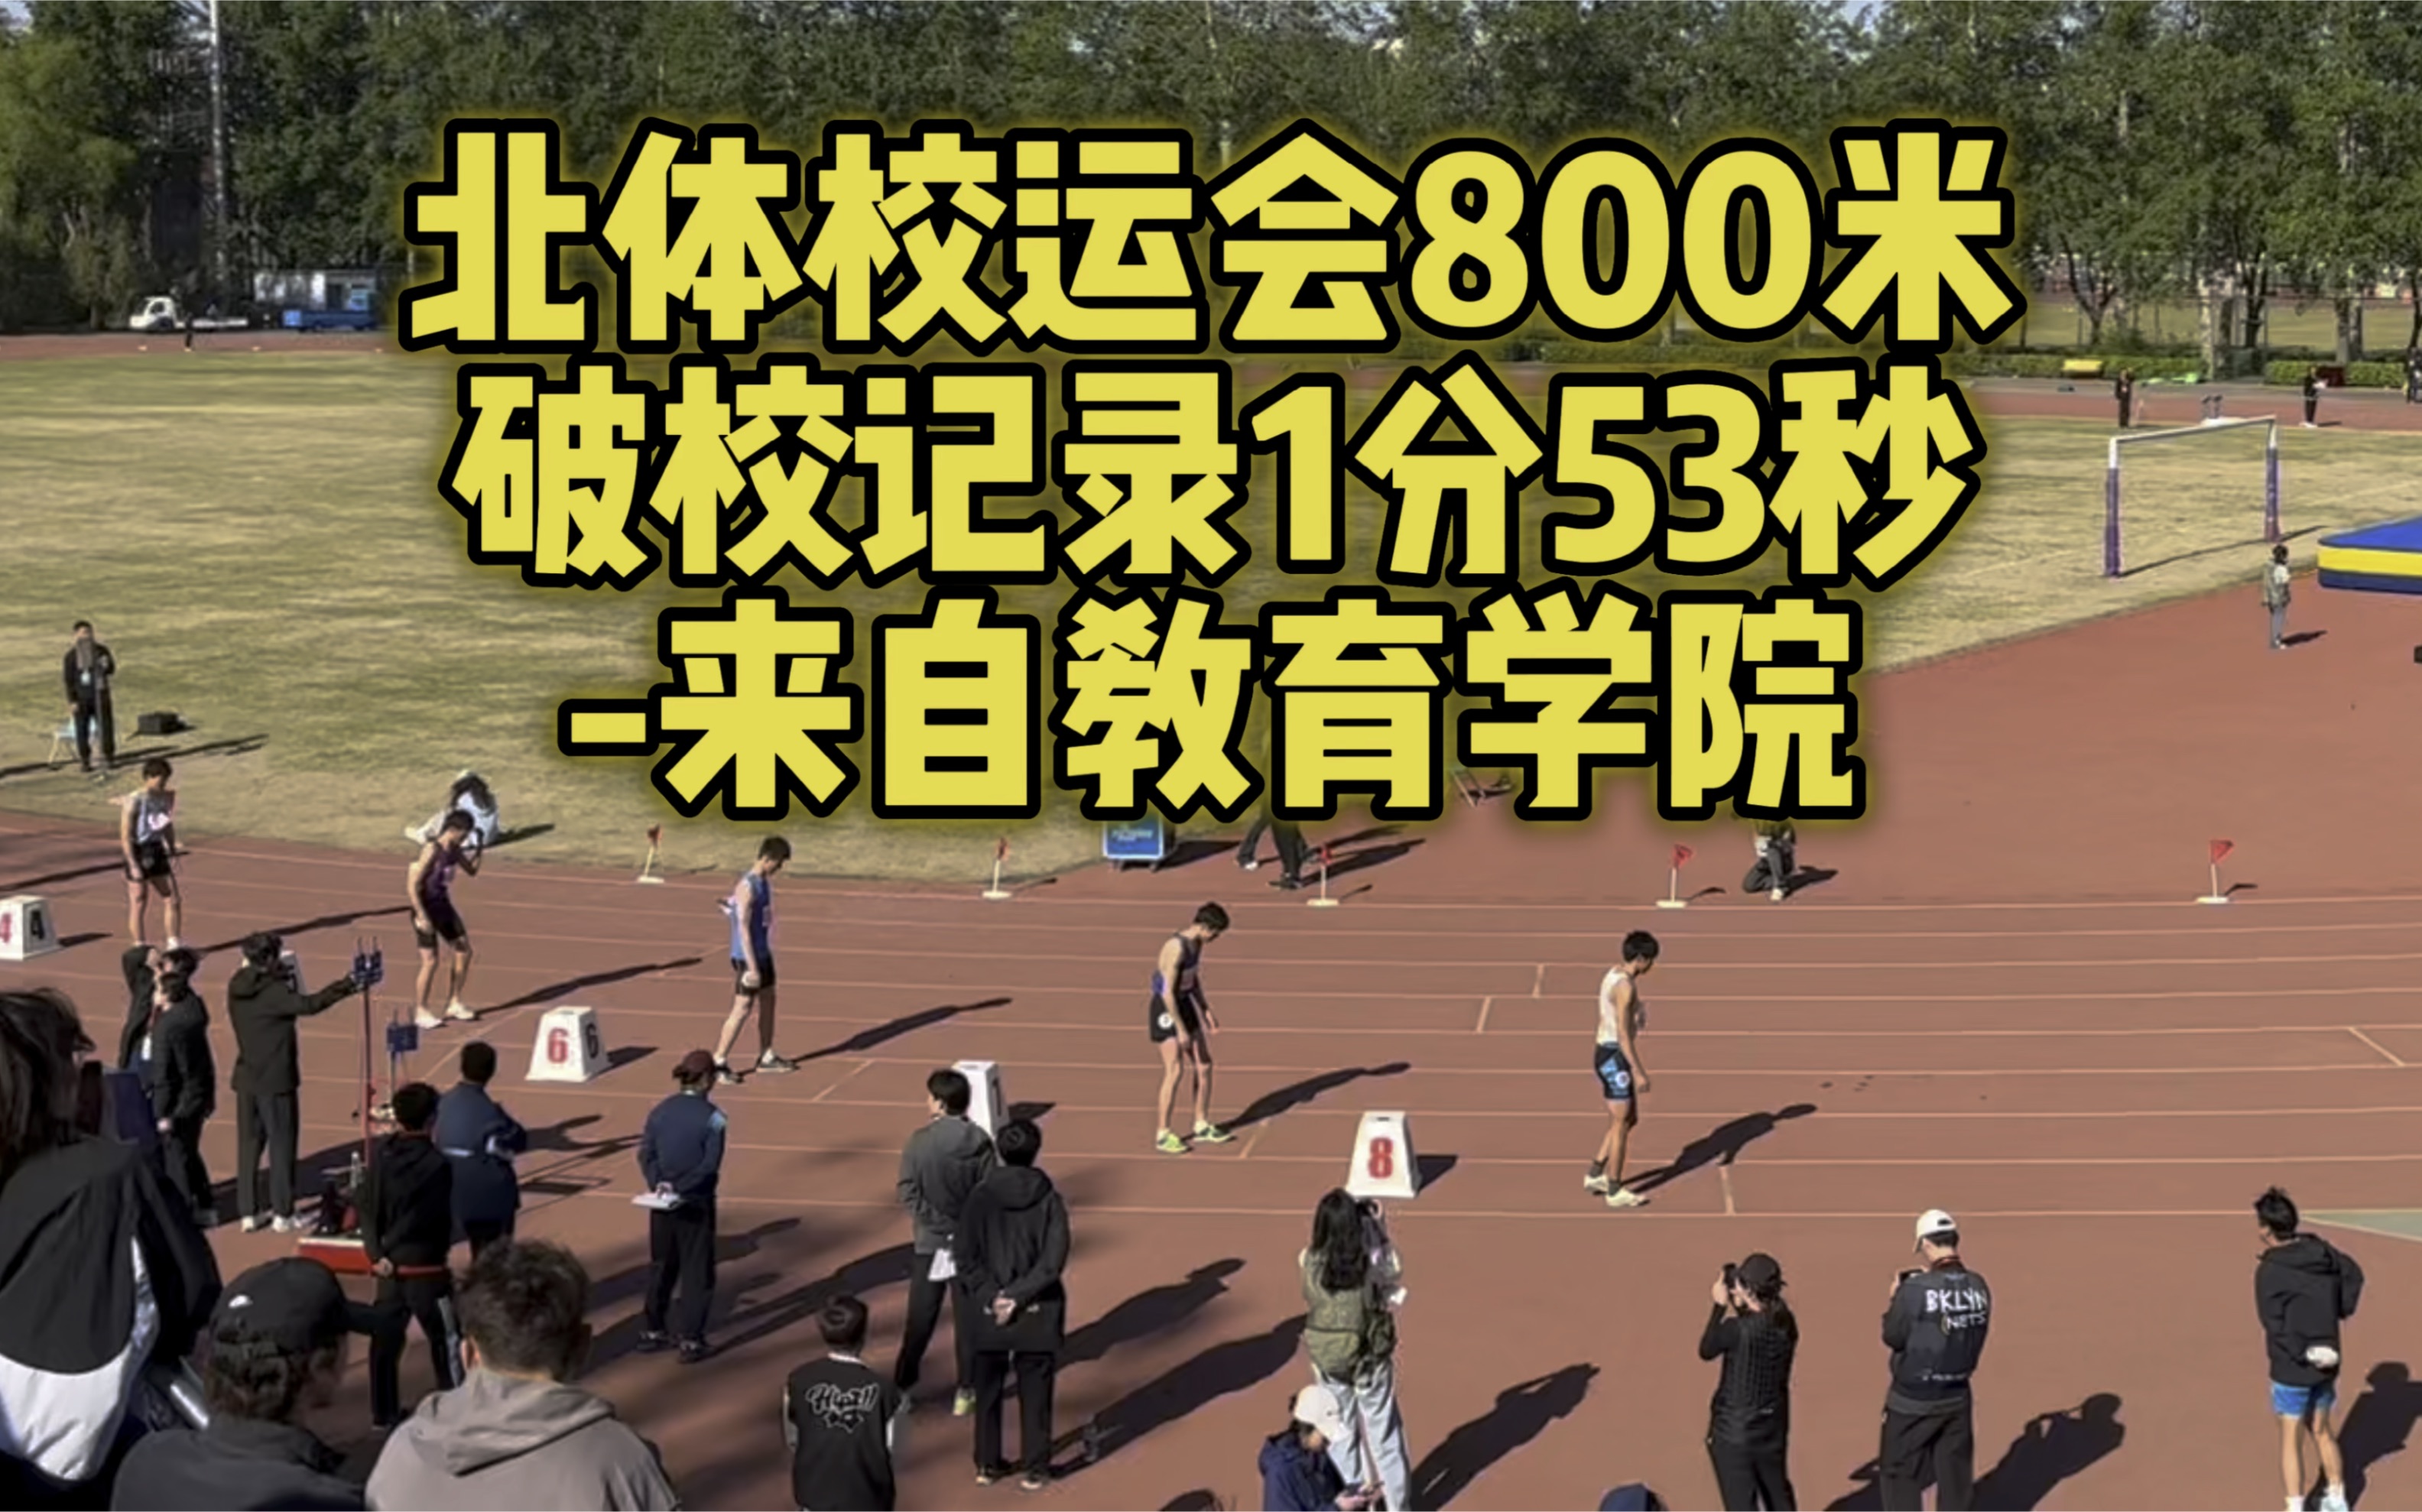 （区区北体纪录，在我室友这也就一般）北体校运会800米新纪录1分53秒